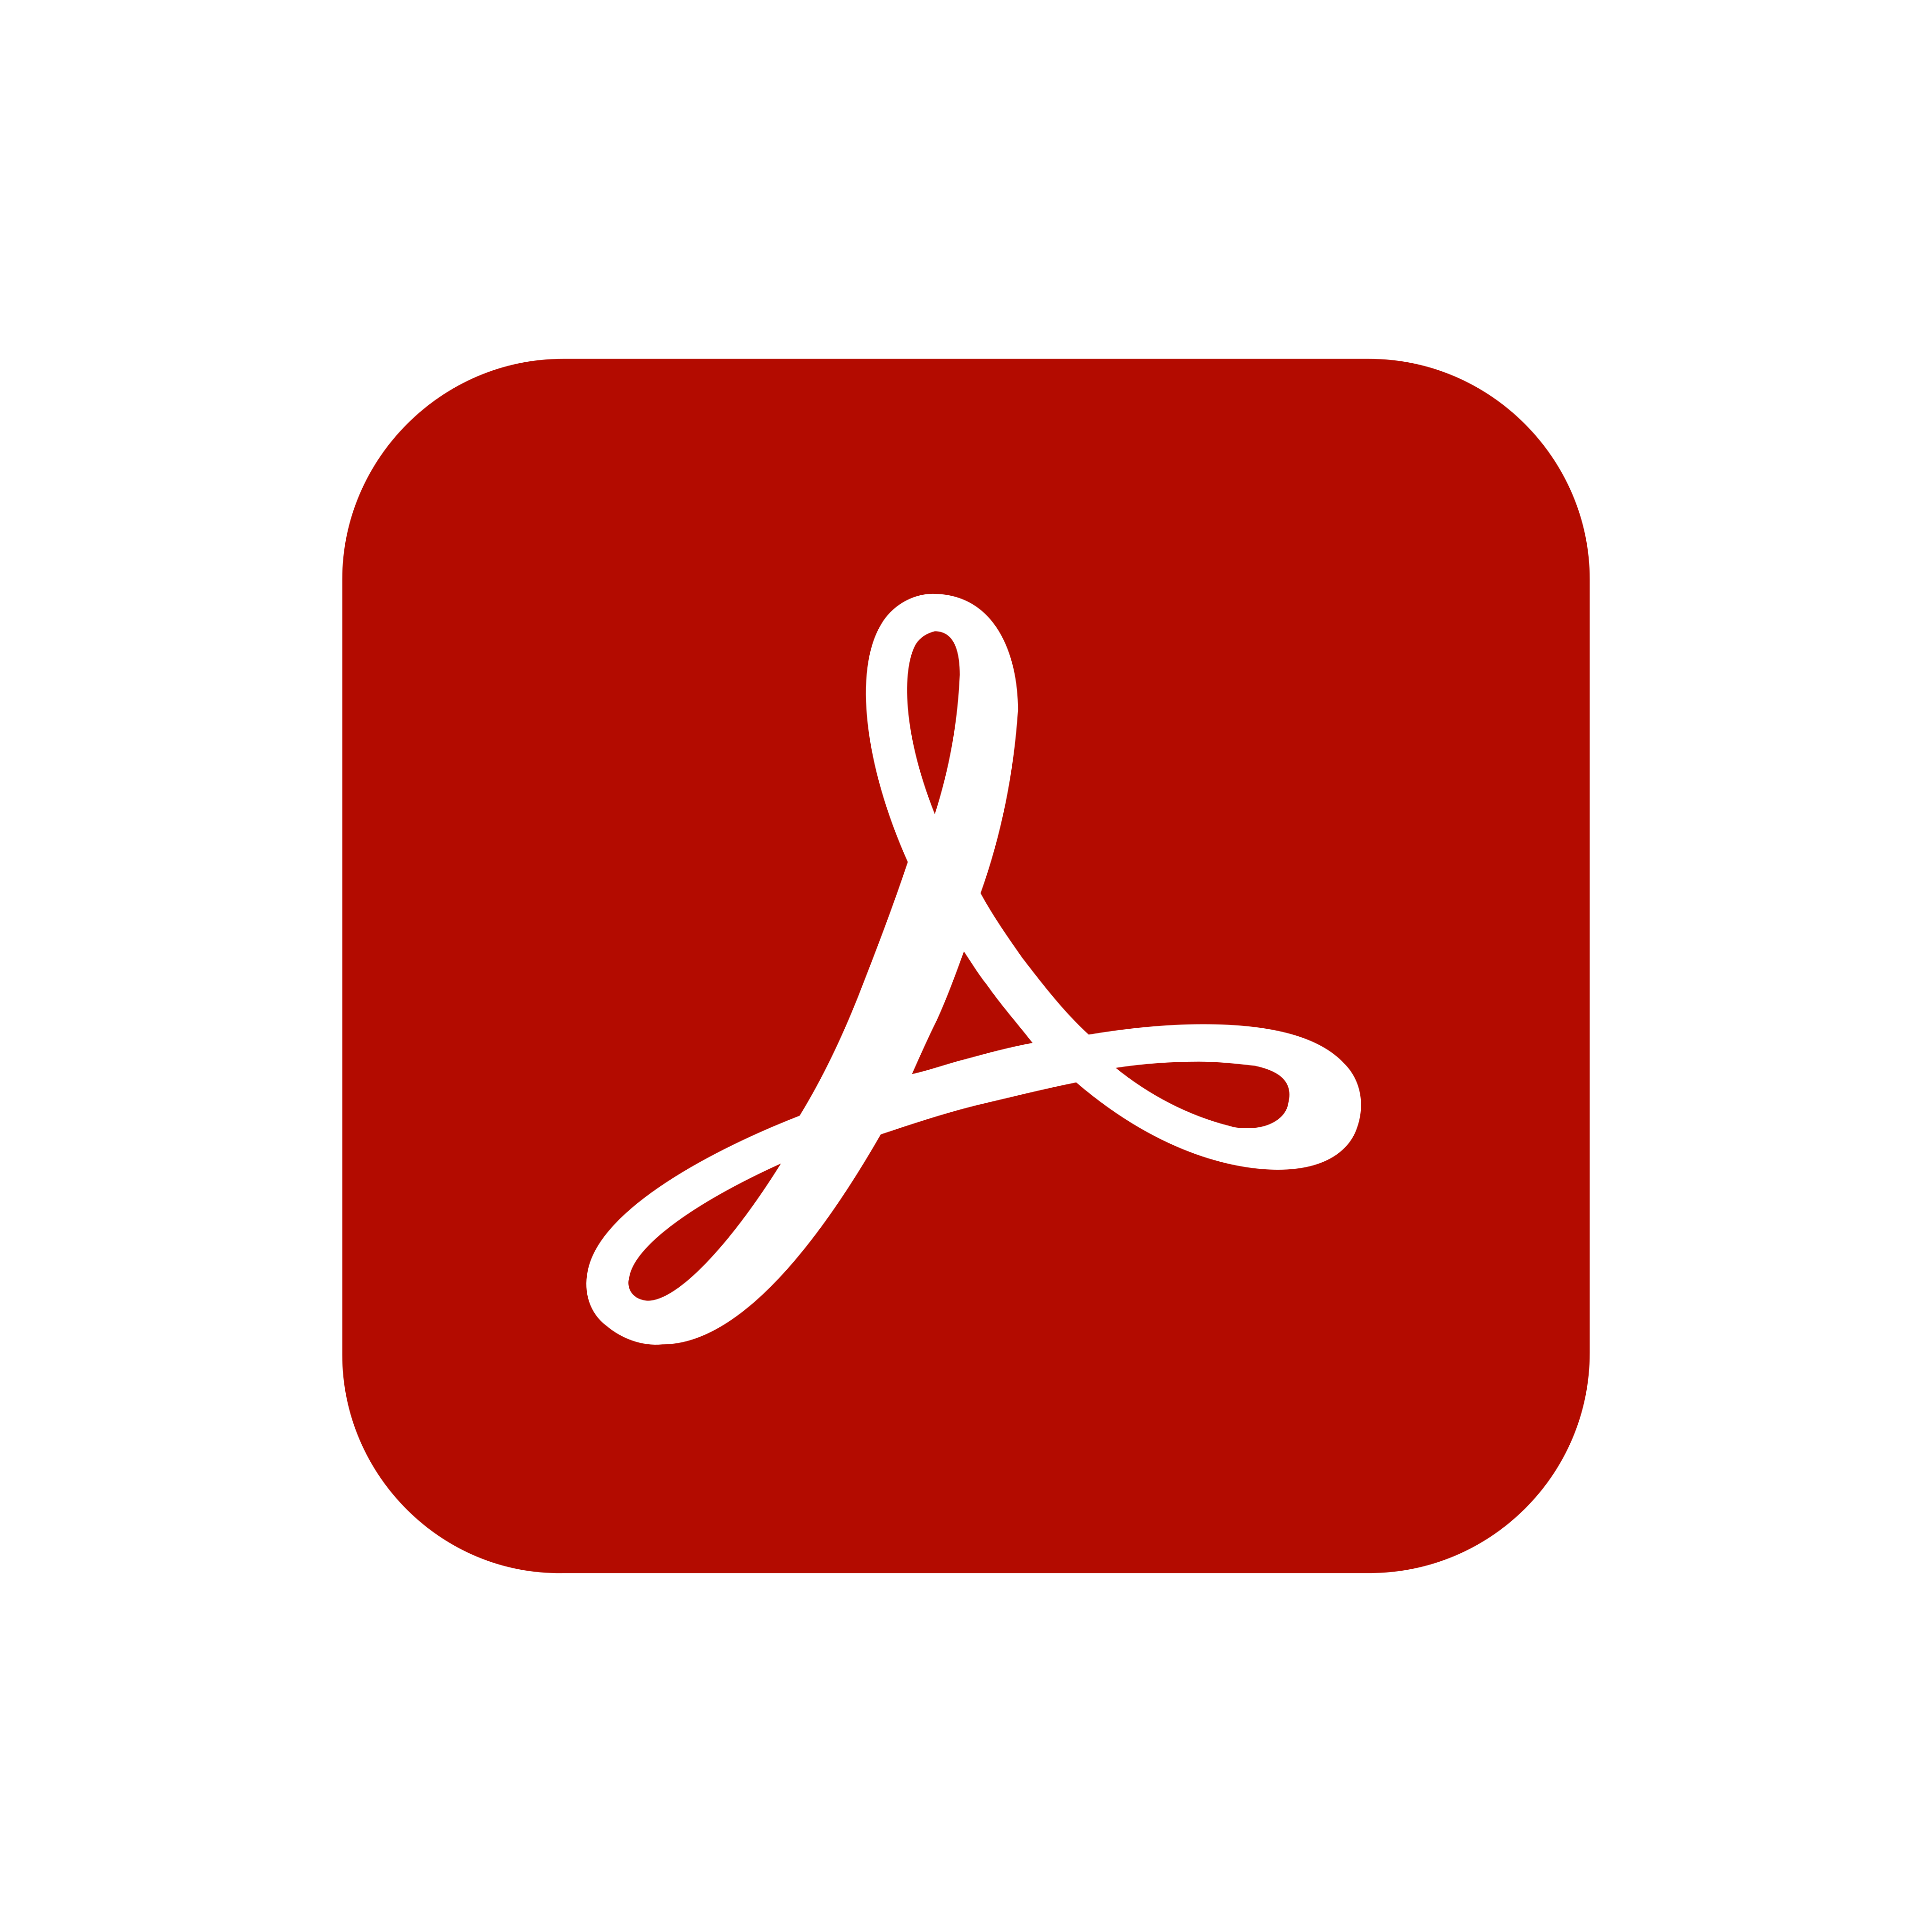 adobe acrobat reader logo 0 - Adobe Acrobat Reader Logo